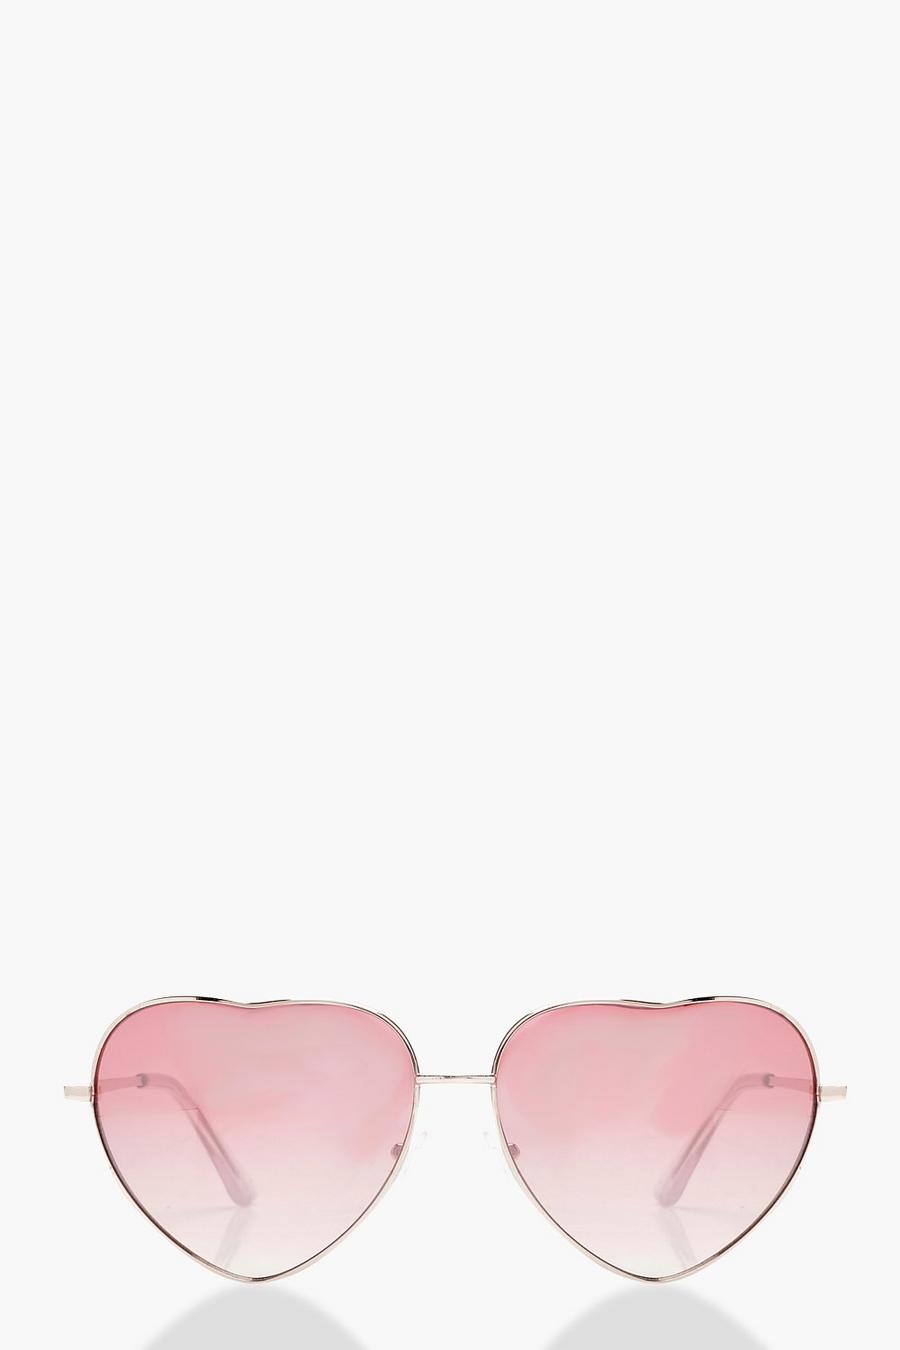 Gafas de sol en forma de corazón color rosa Alice, Rosa pastel image number 1